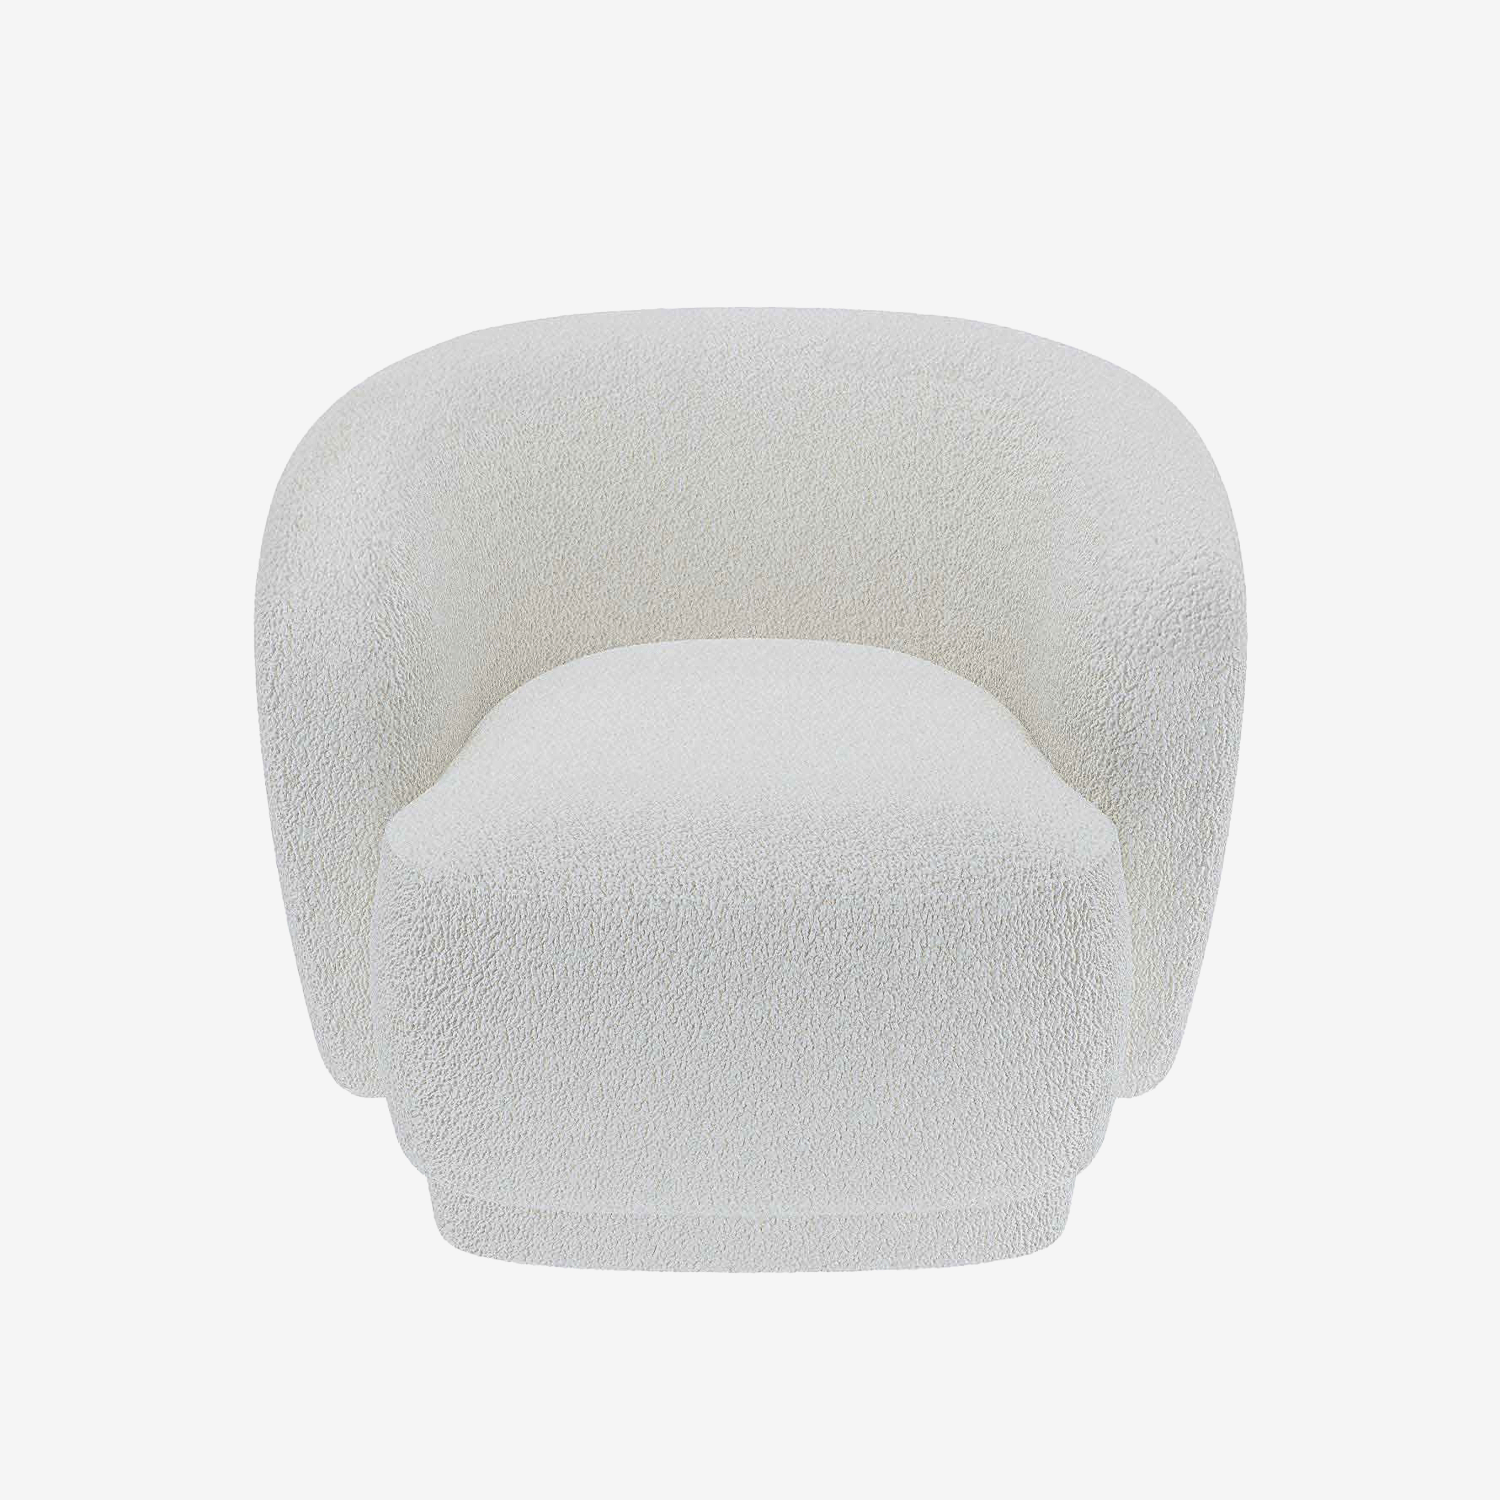 Fauteuil de style scandinave en bouclette blanc - Potiron Paris, la satisfaction du fauteuil design et confortable pas cher